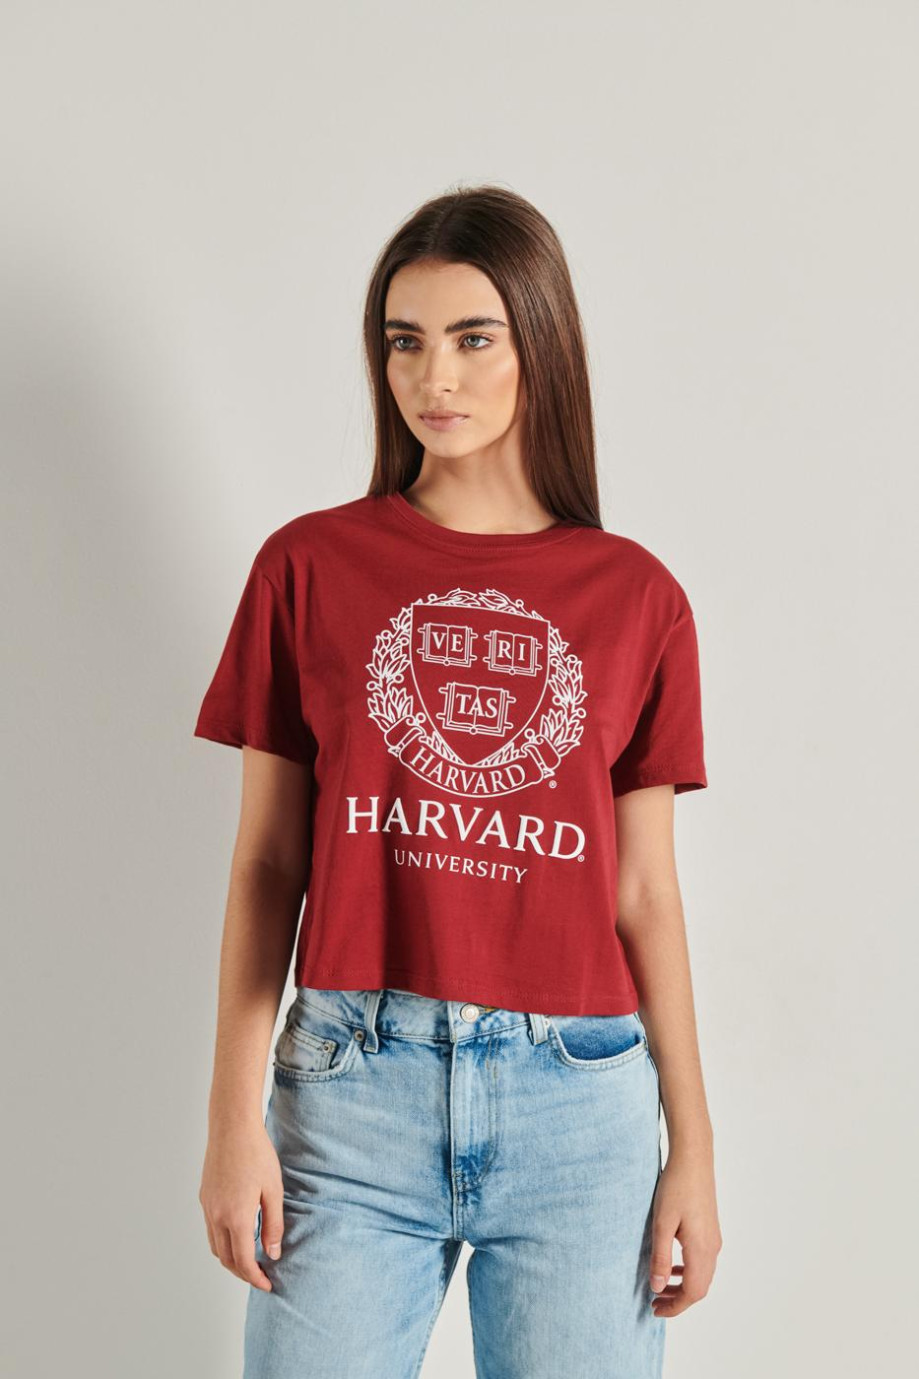 Camiseta roja oscura crop top oversize con diseño college de Harvard